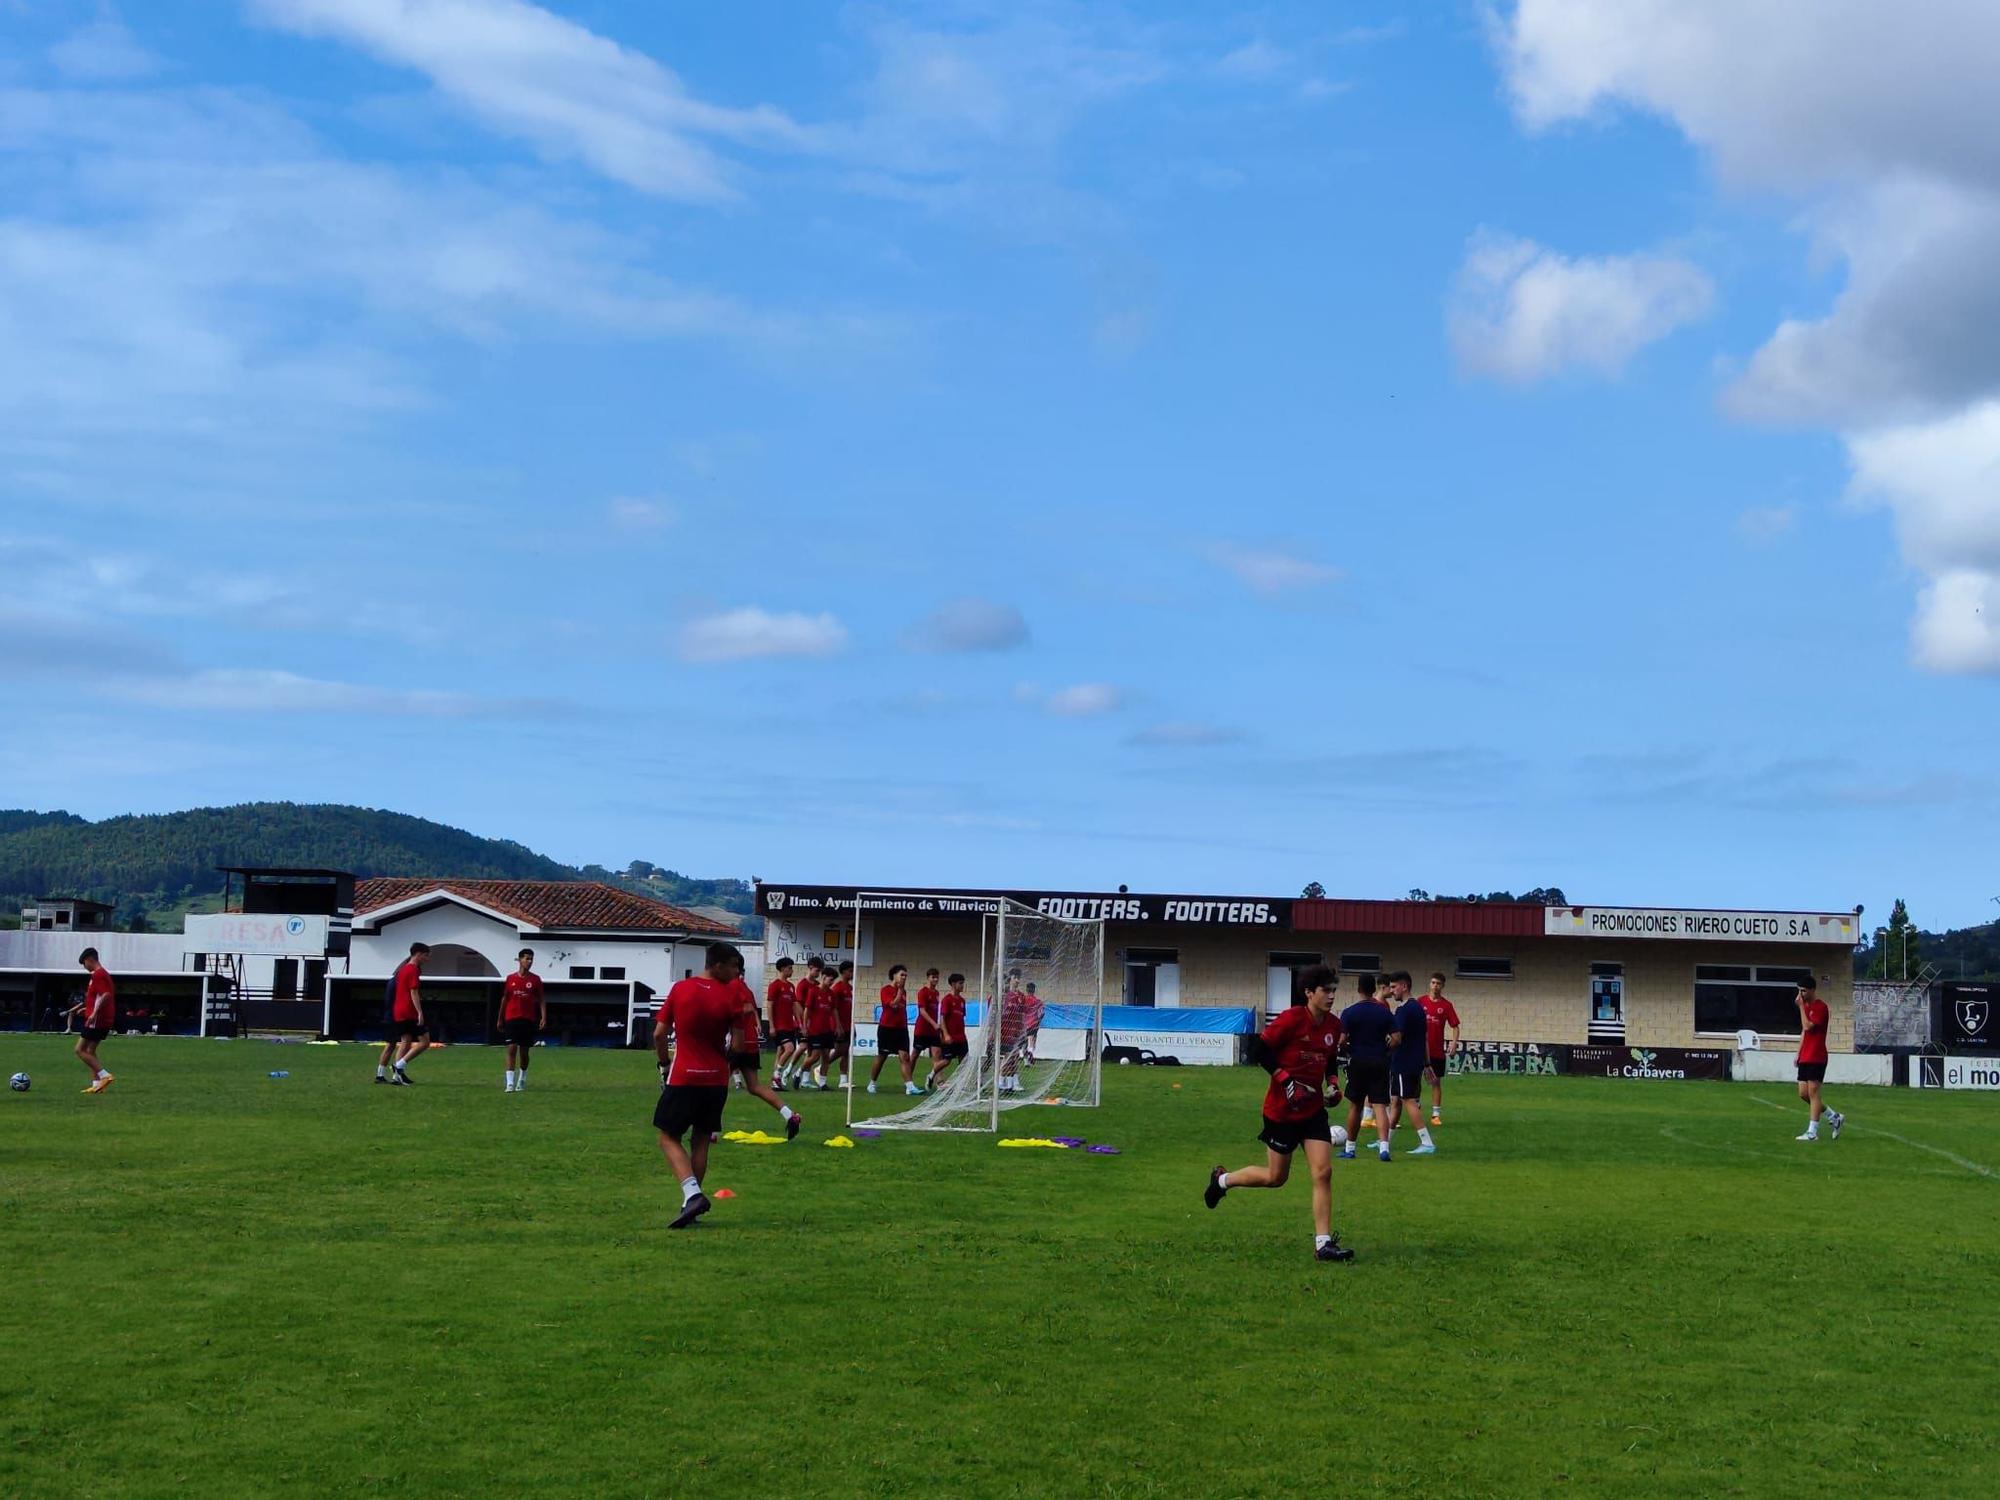 La cantera del fútbol profesional entrena en Villaviciosa: así es el campus de Marcelino García Toral